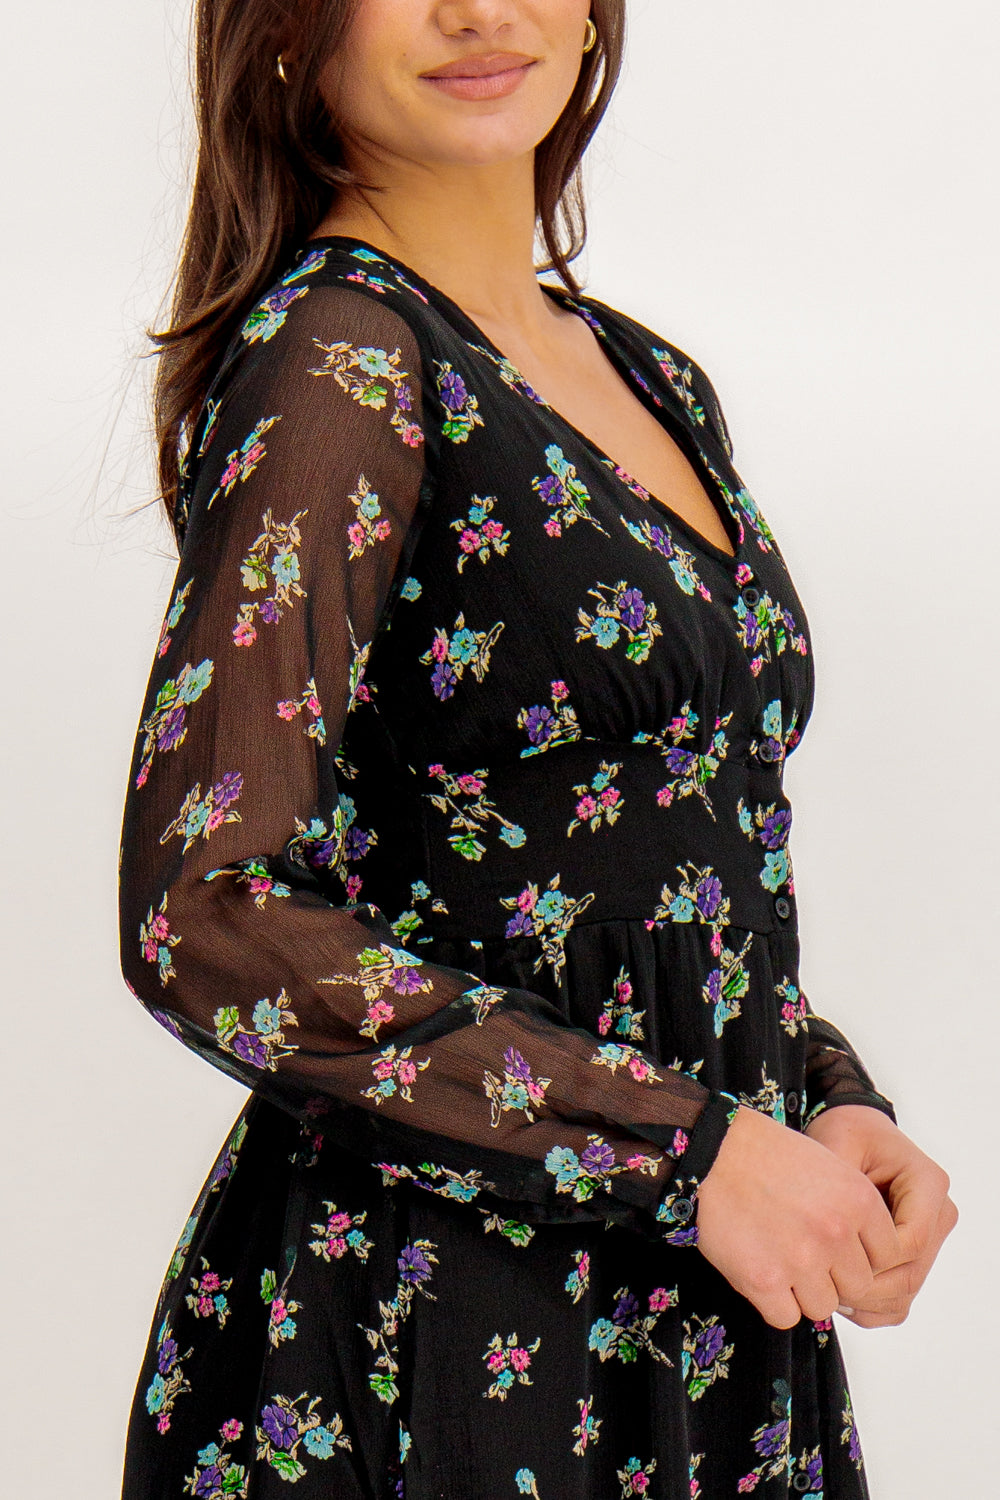 Malina Black Floral Print Midi Dress